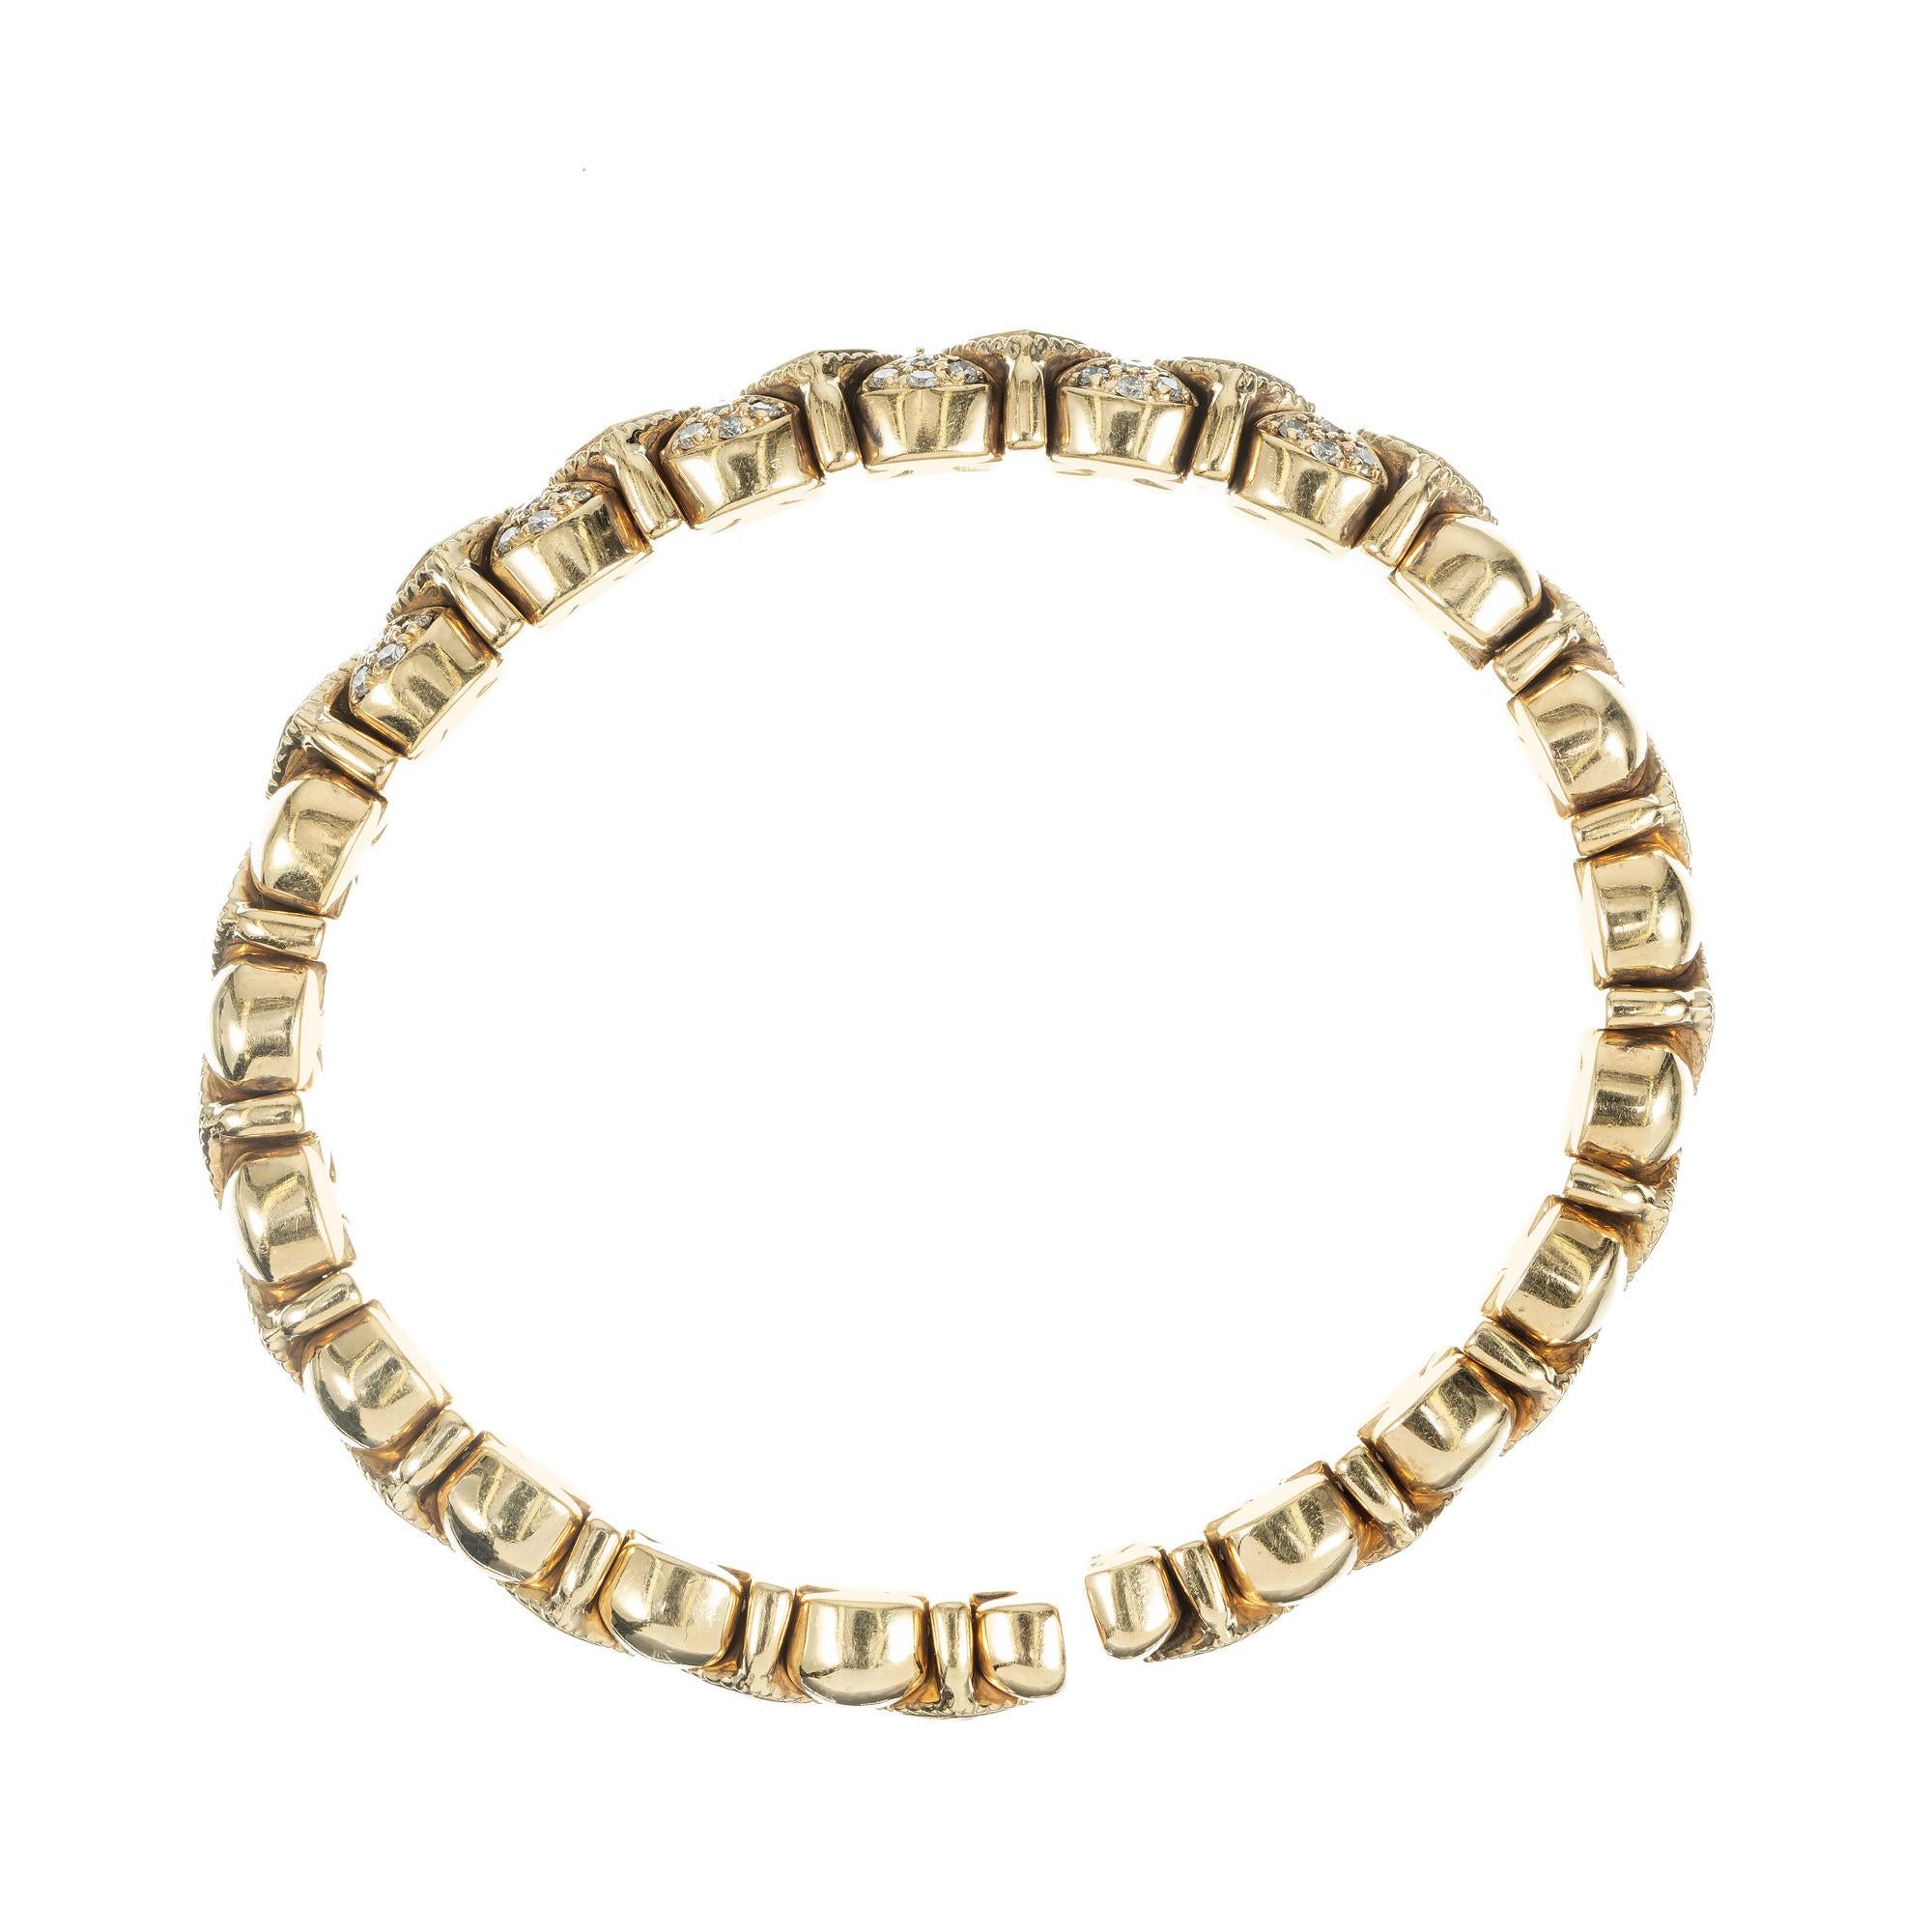 Sonia B Galerie de Bijoux Diamant-Armband aus 14k Gelbgold mit flexiblem Armreif. Besetzt mit 7 Diamanten im Prinzessinnenschliff und 48 Diamanten im Voll- und Quadratschliff. Passt bis zu einem Handgelenk von 7,5 Zoll. 

7 Diamanten im